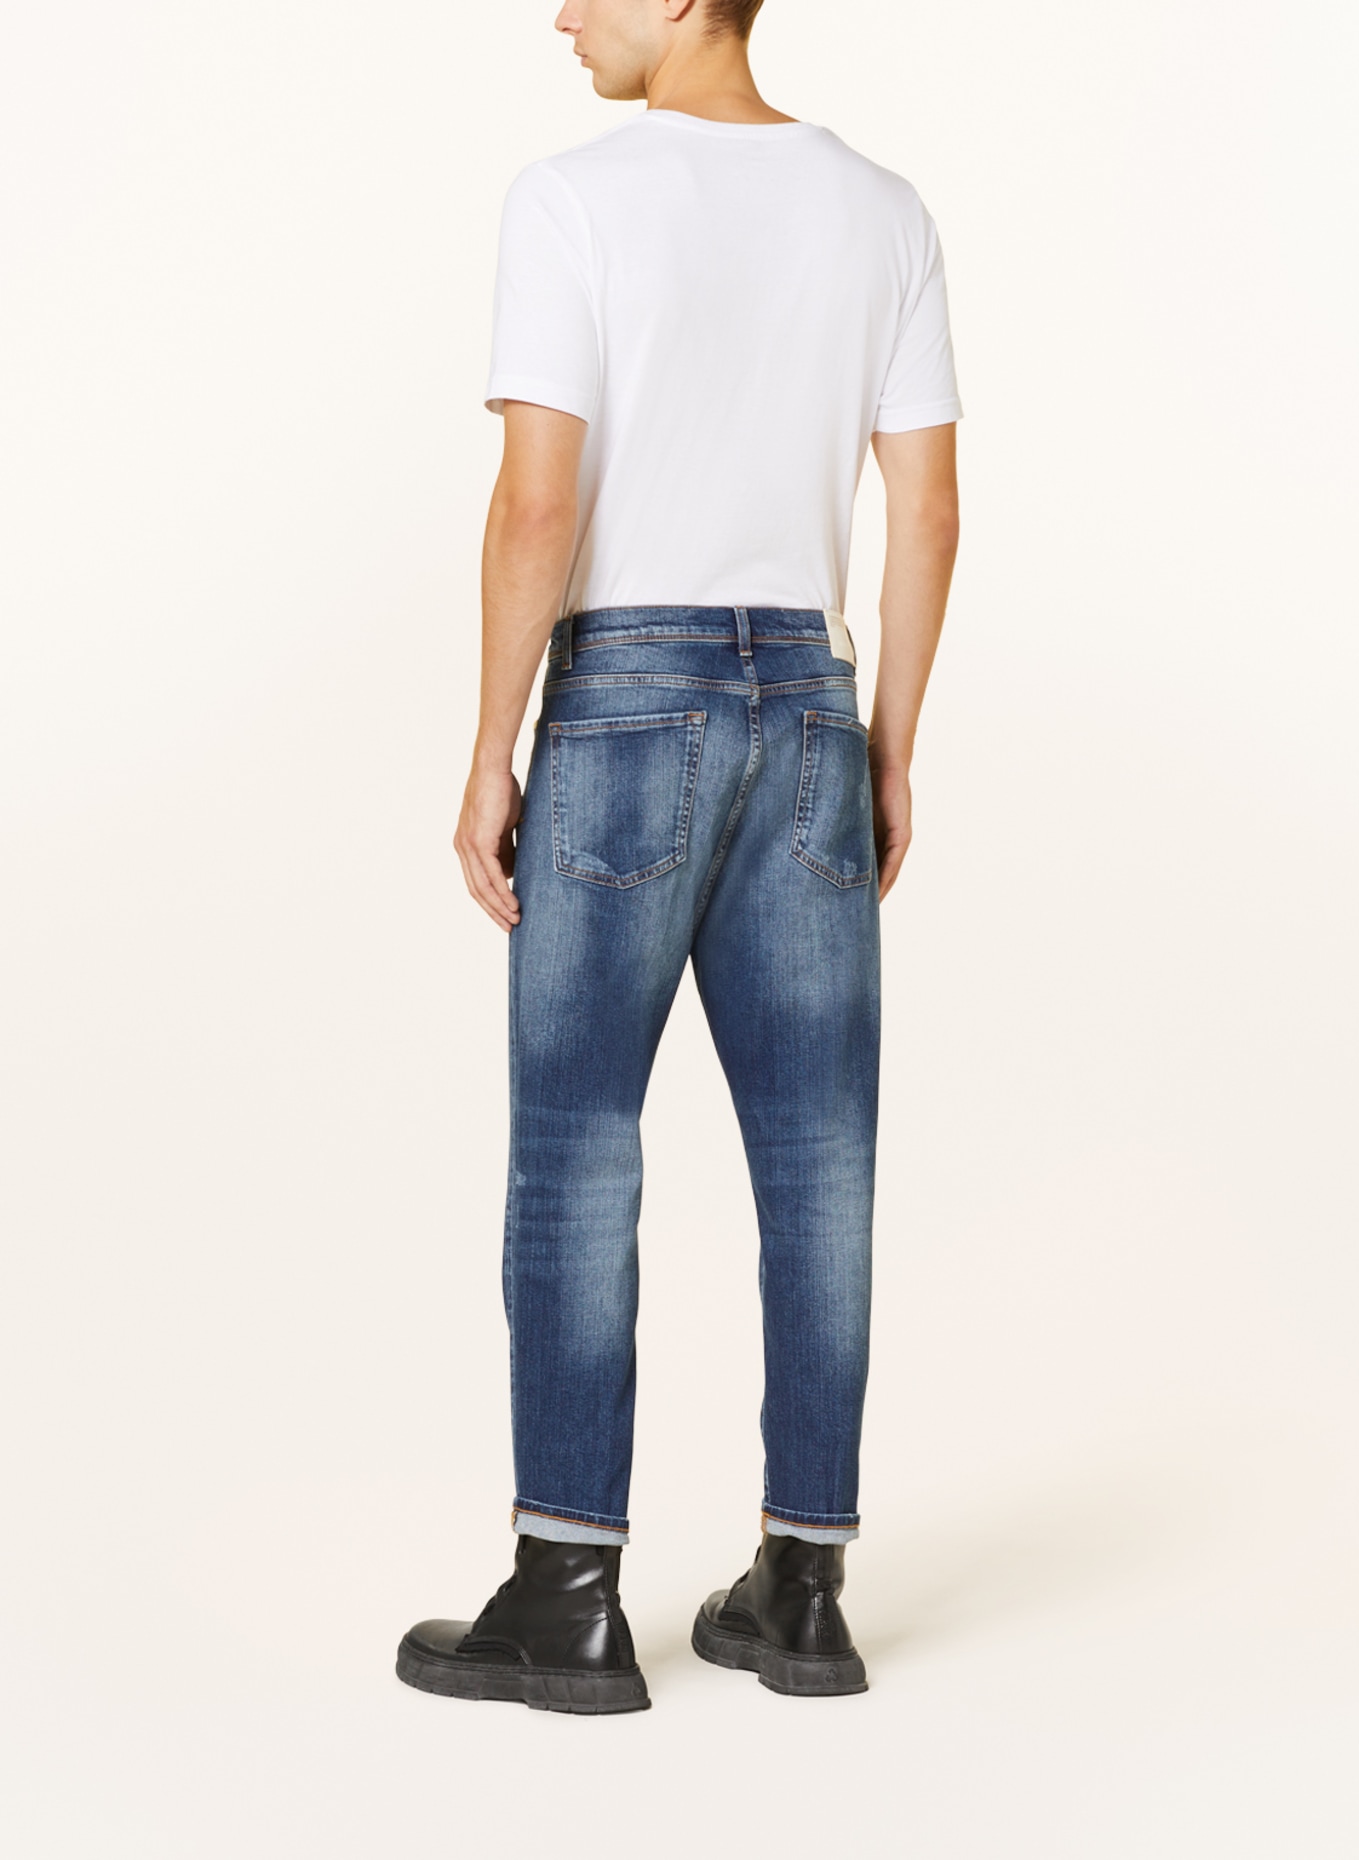 GOLDGARN DENIM Jeans RHEINAU Relaxed Cropped Fit mit verkürzter Beinlänge, Farbe: 1090 MID BLUE (Bild 3)